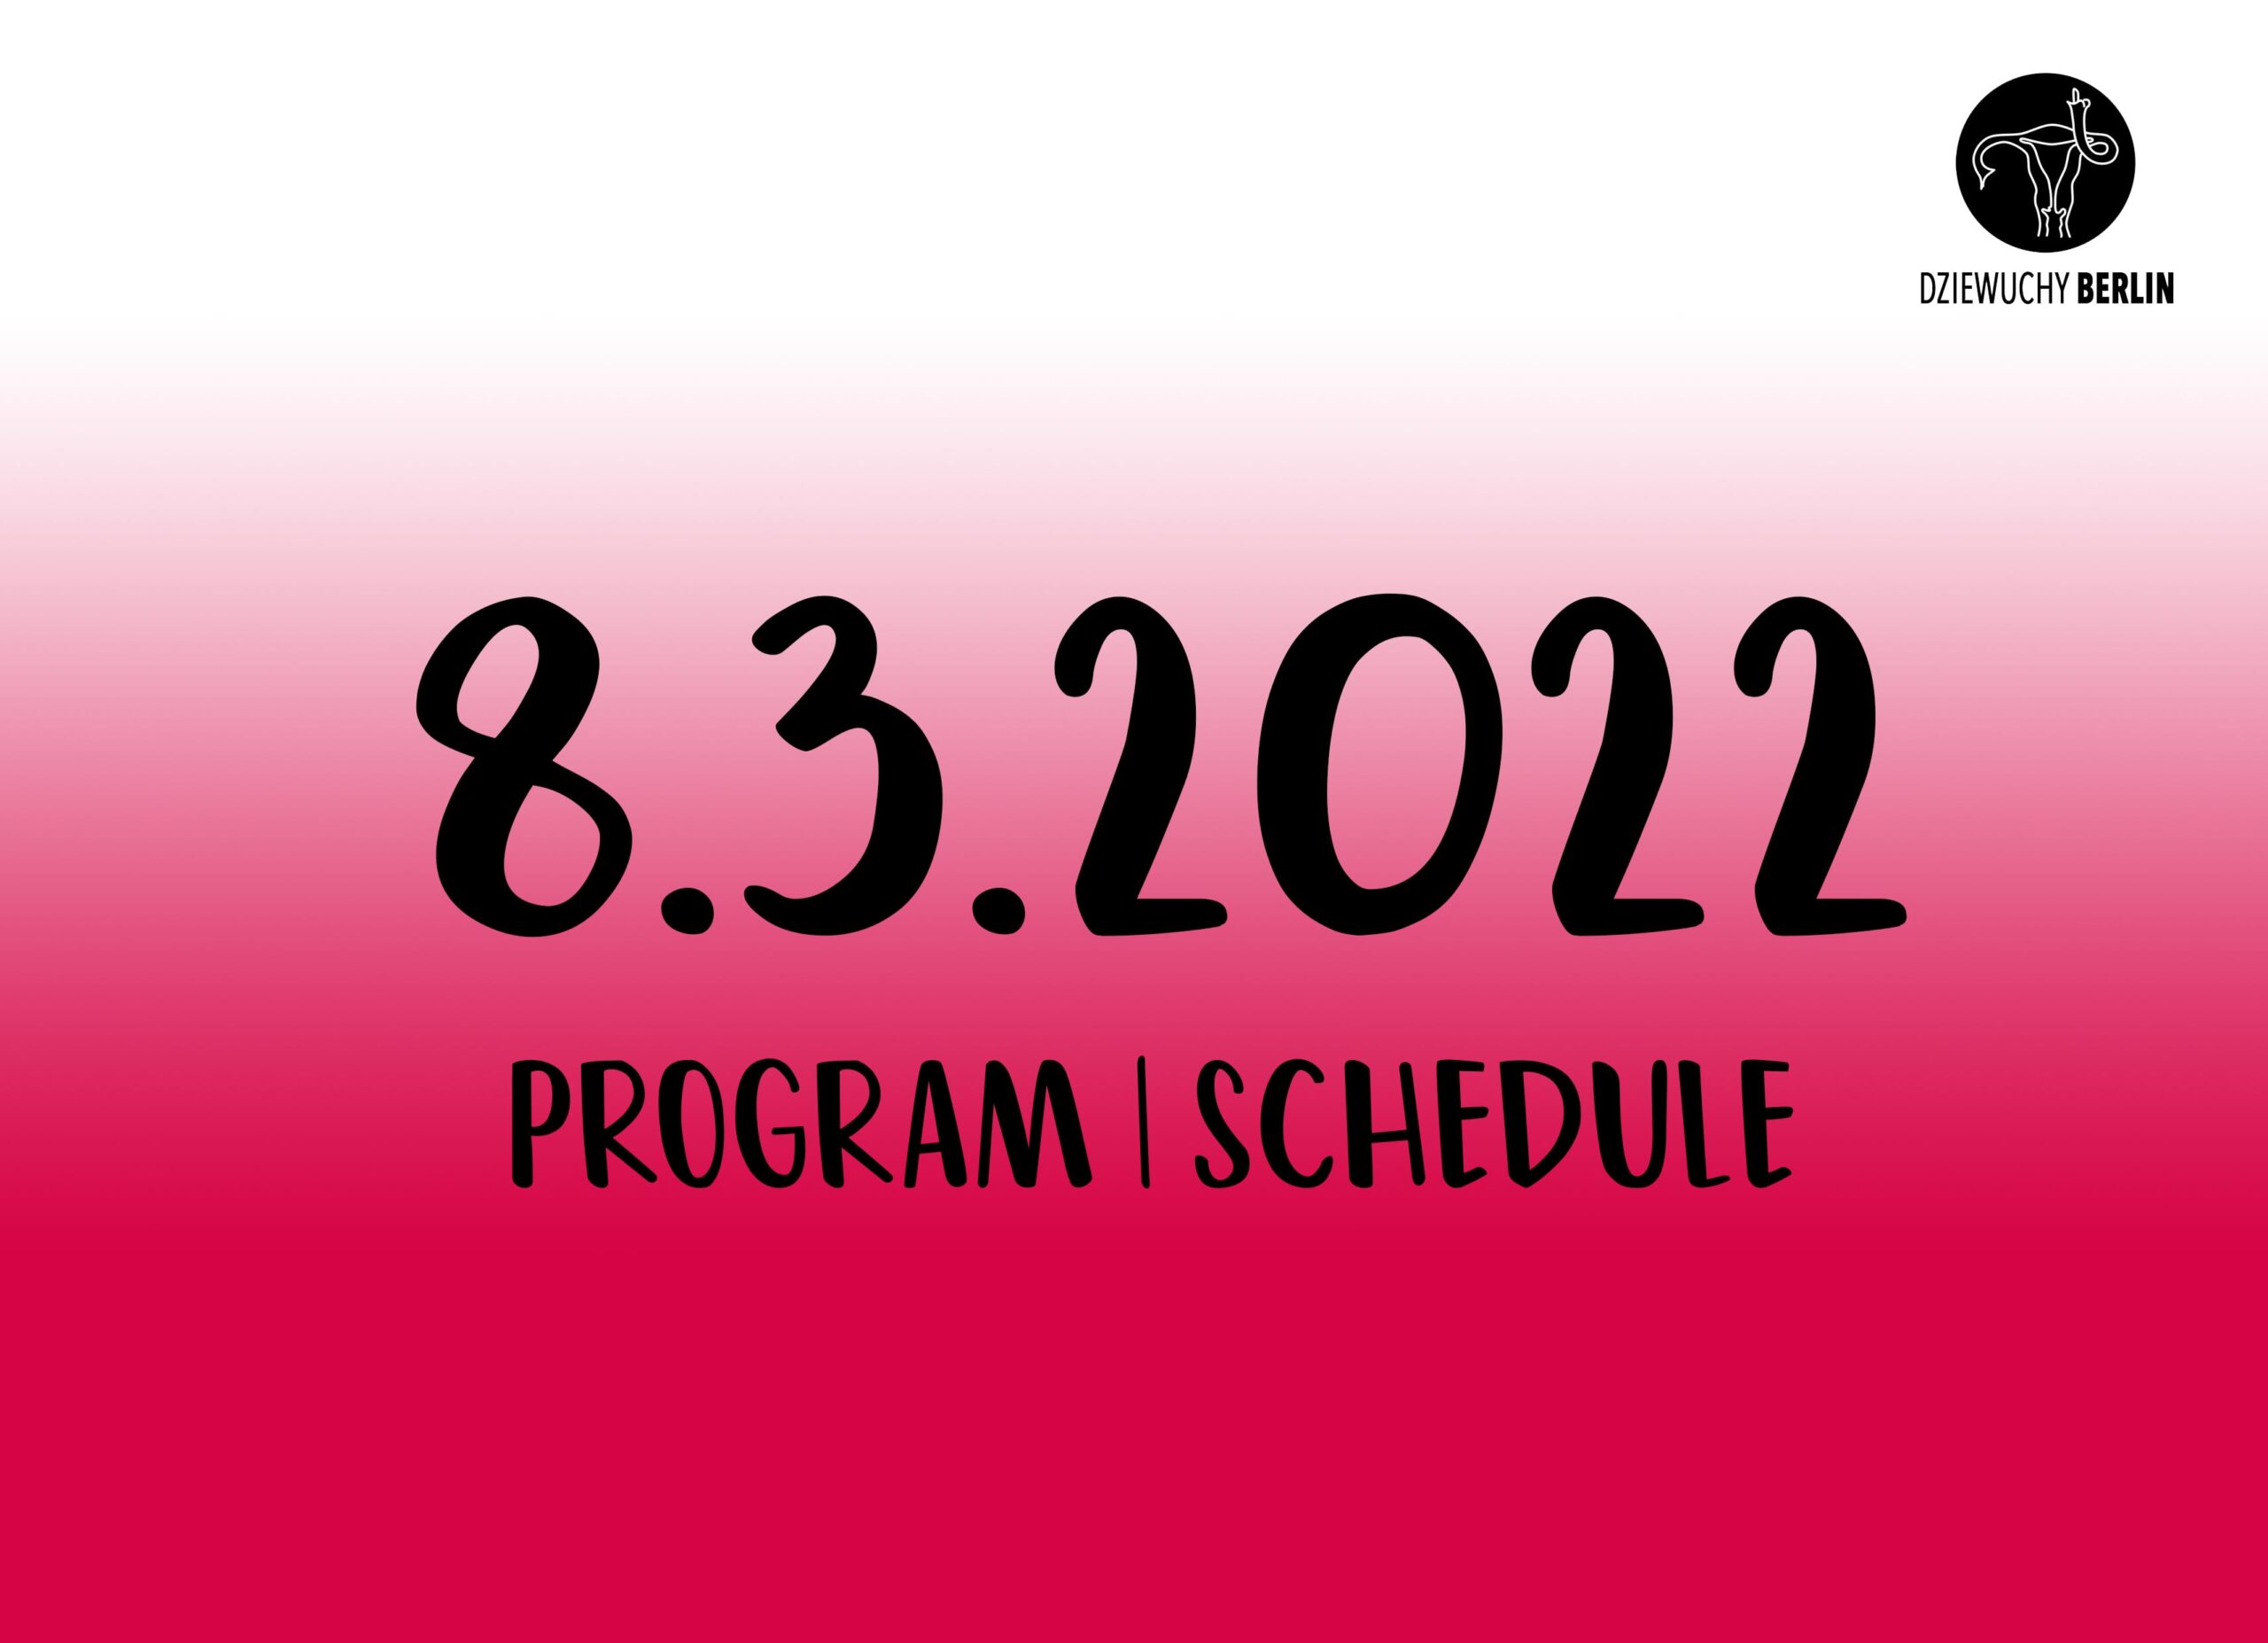 8.3.2022 International Women*s Day – Schedule / Program